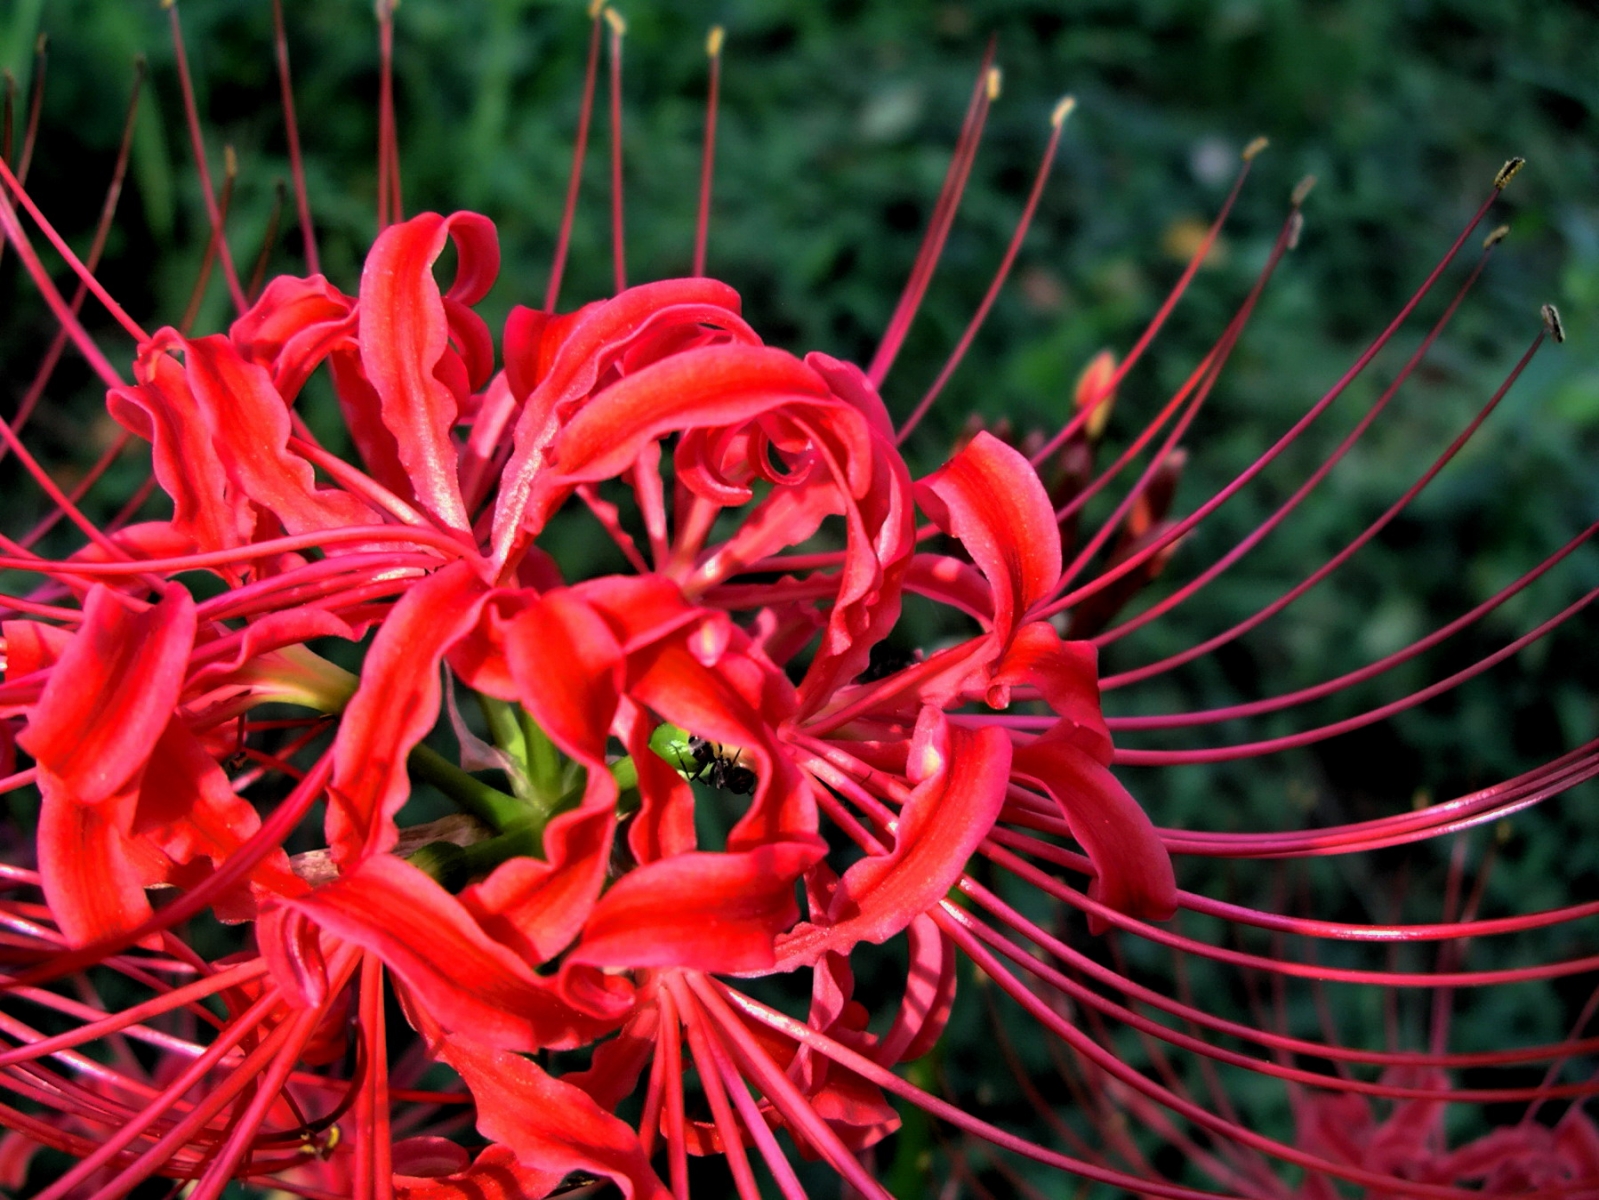 Hoa loa kèn nhện đỏ hay còn gọi là hoa bỉ ngạn